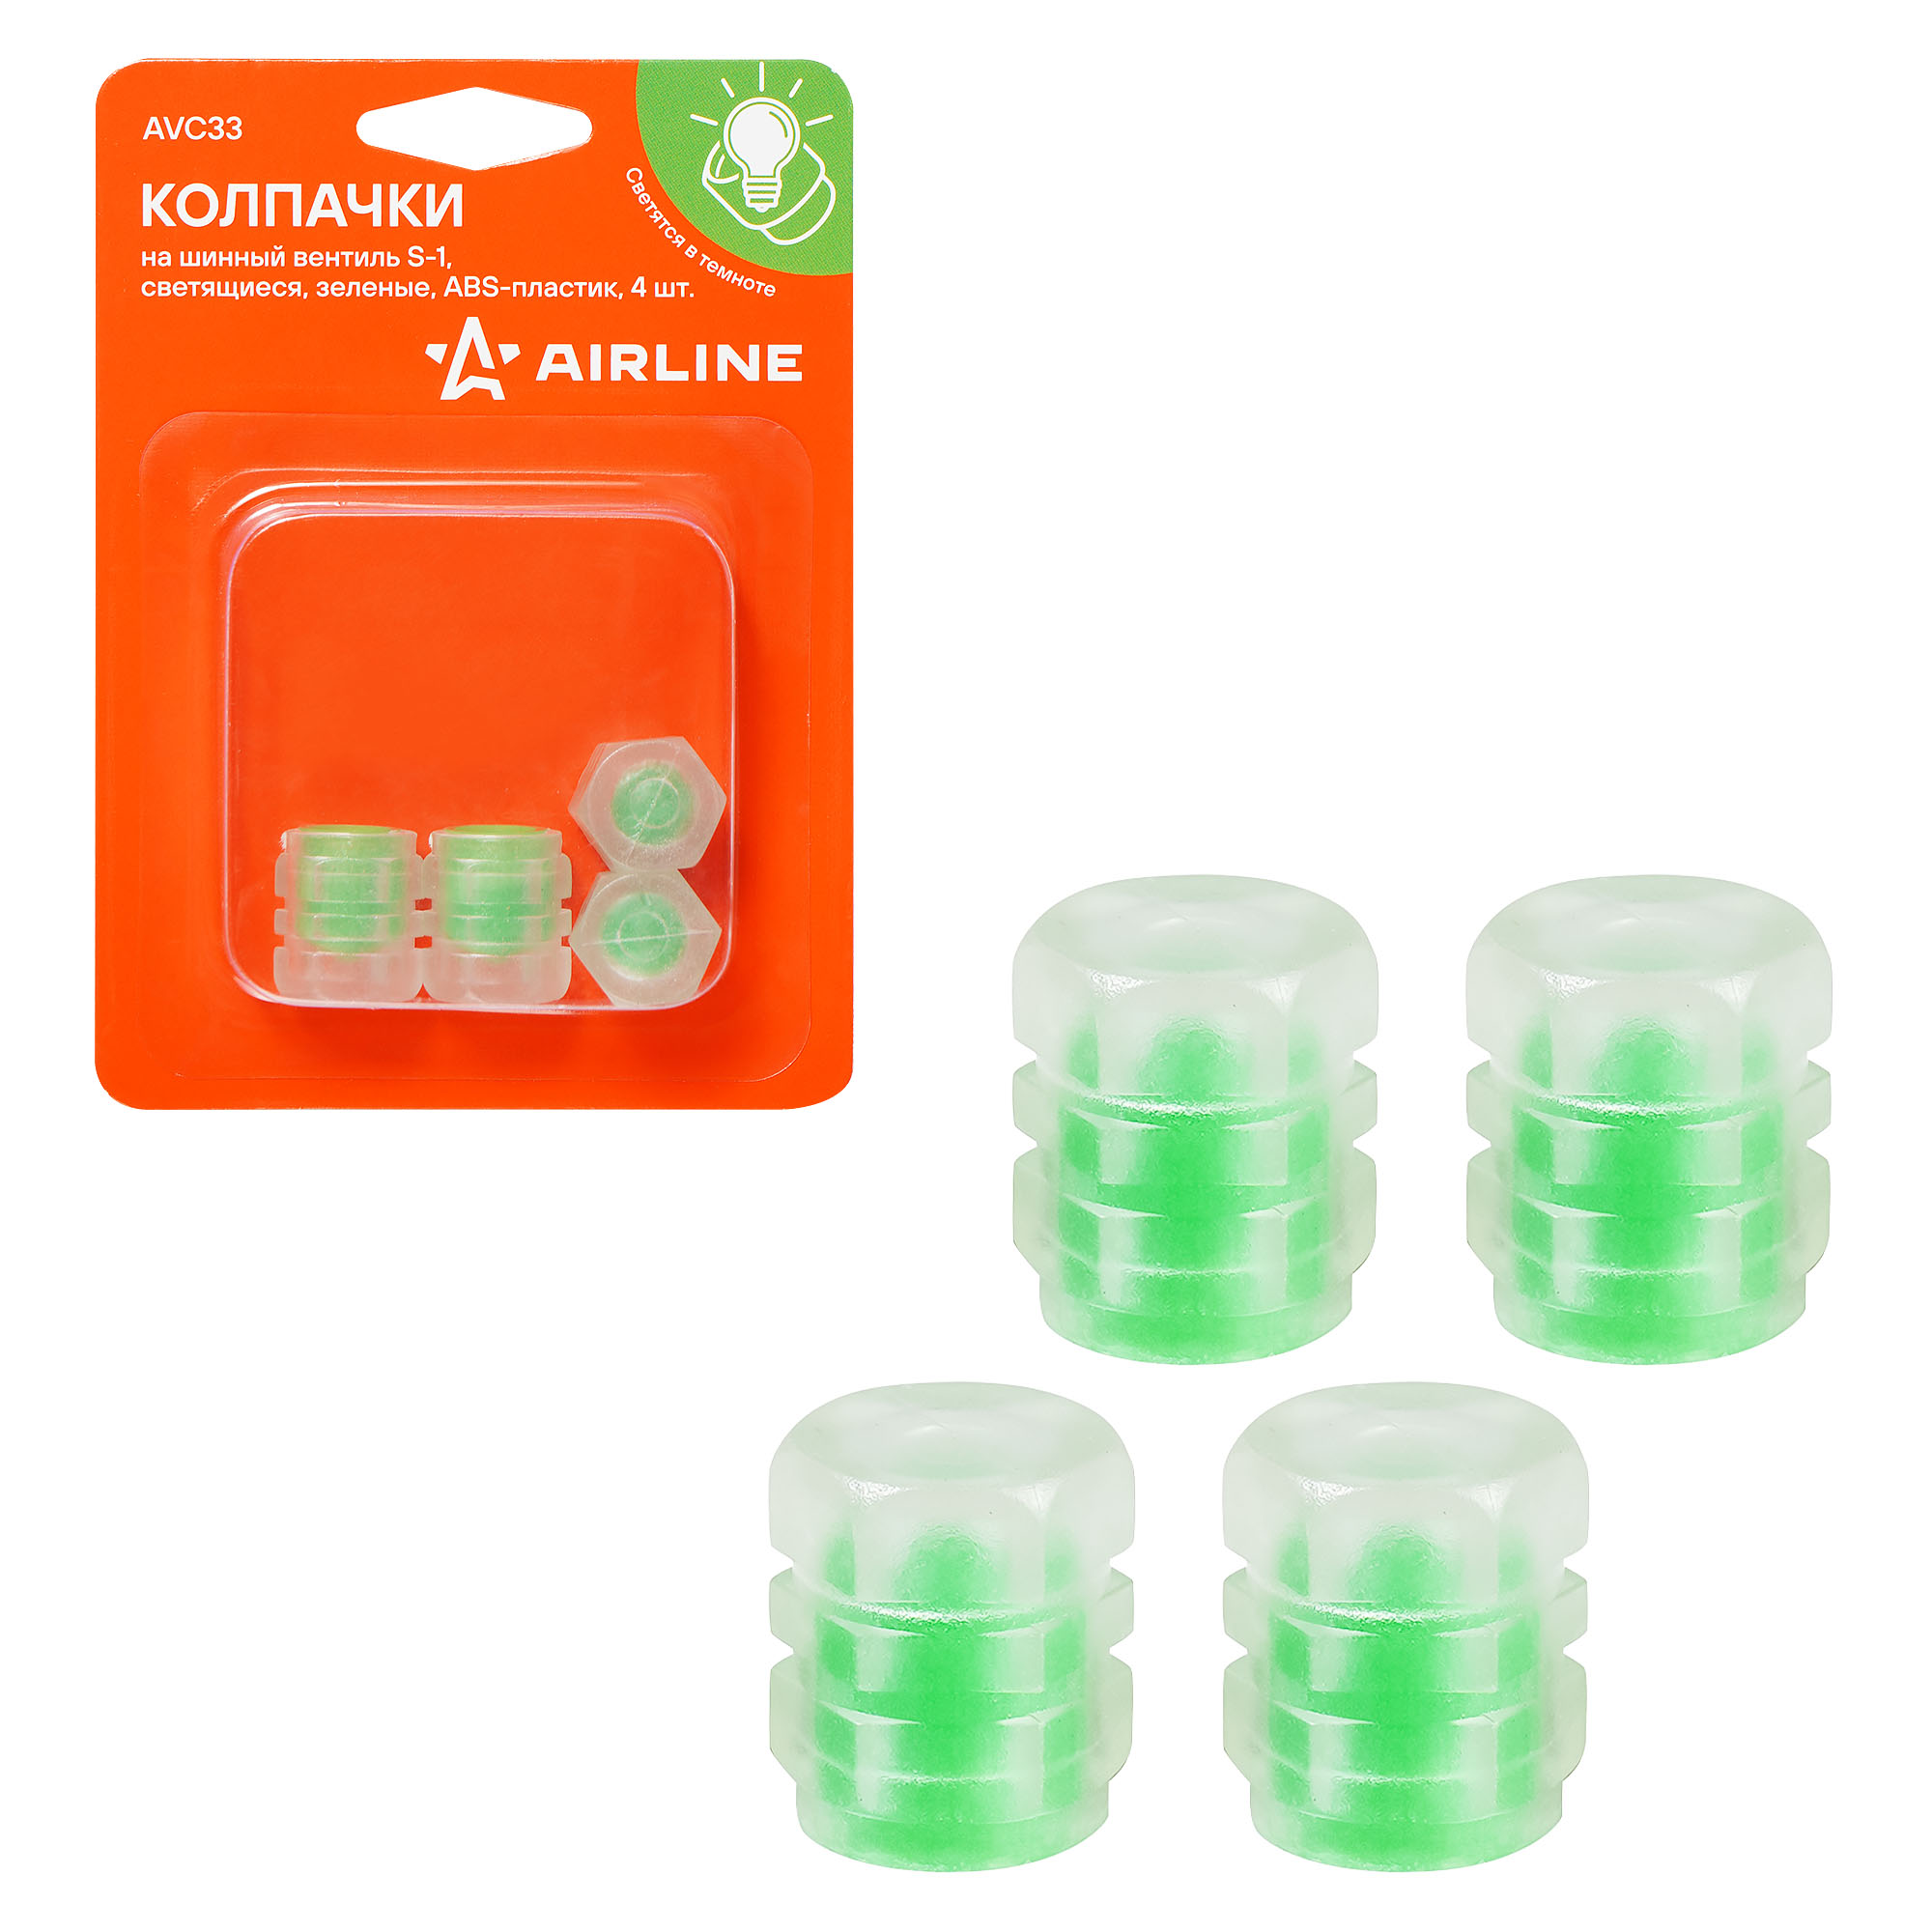 Колпачки на шинный вентиль Airline S-1, светящиеся, зеленые, ABS-пластик, 4 шт AVC33